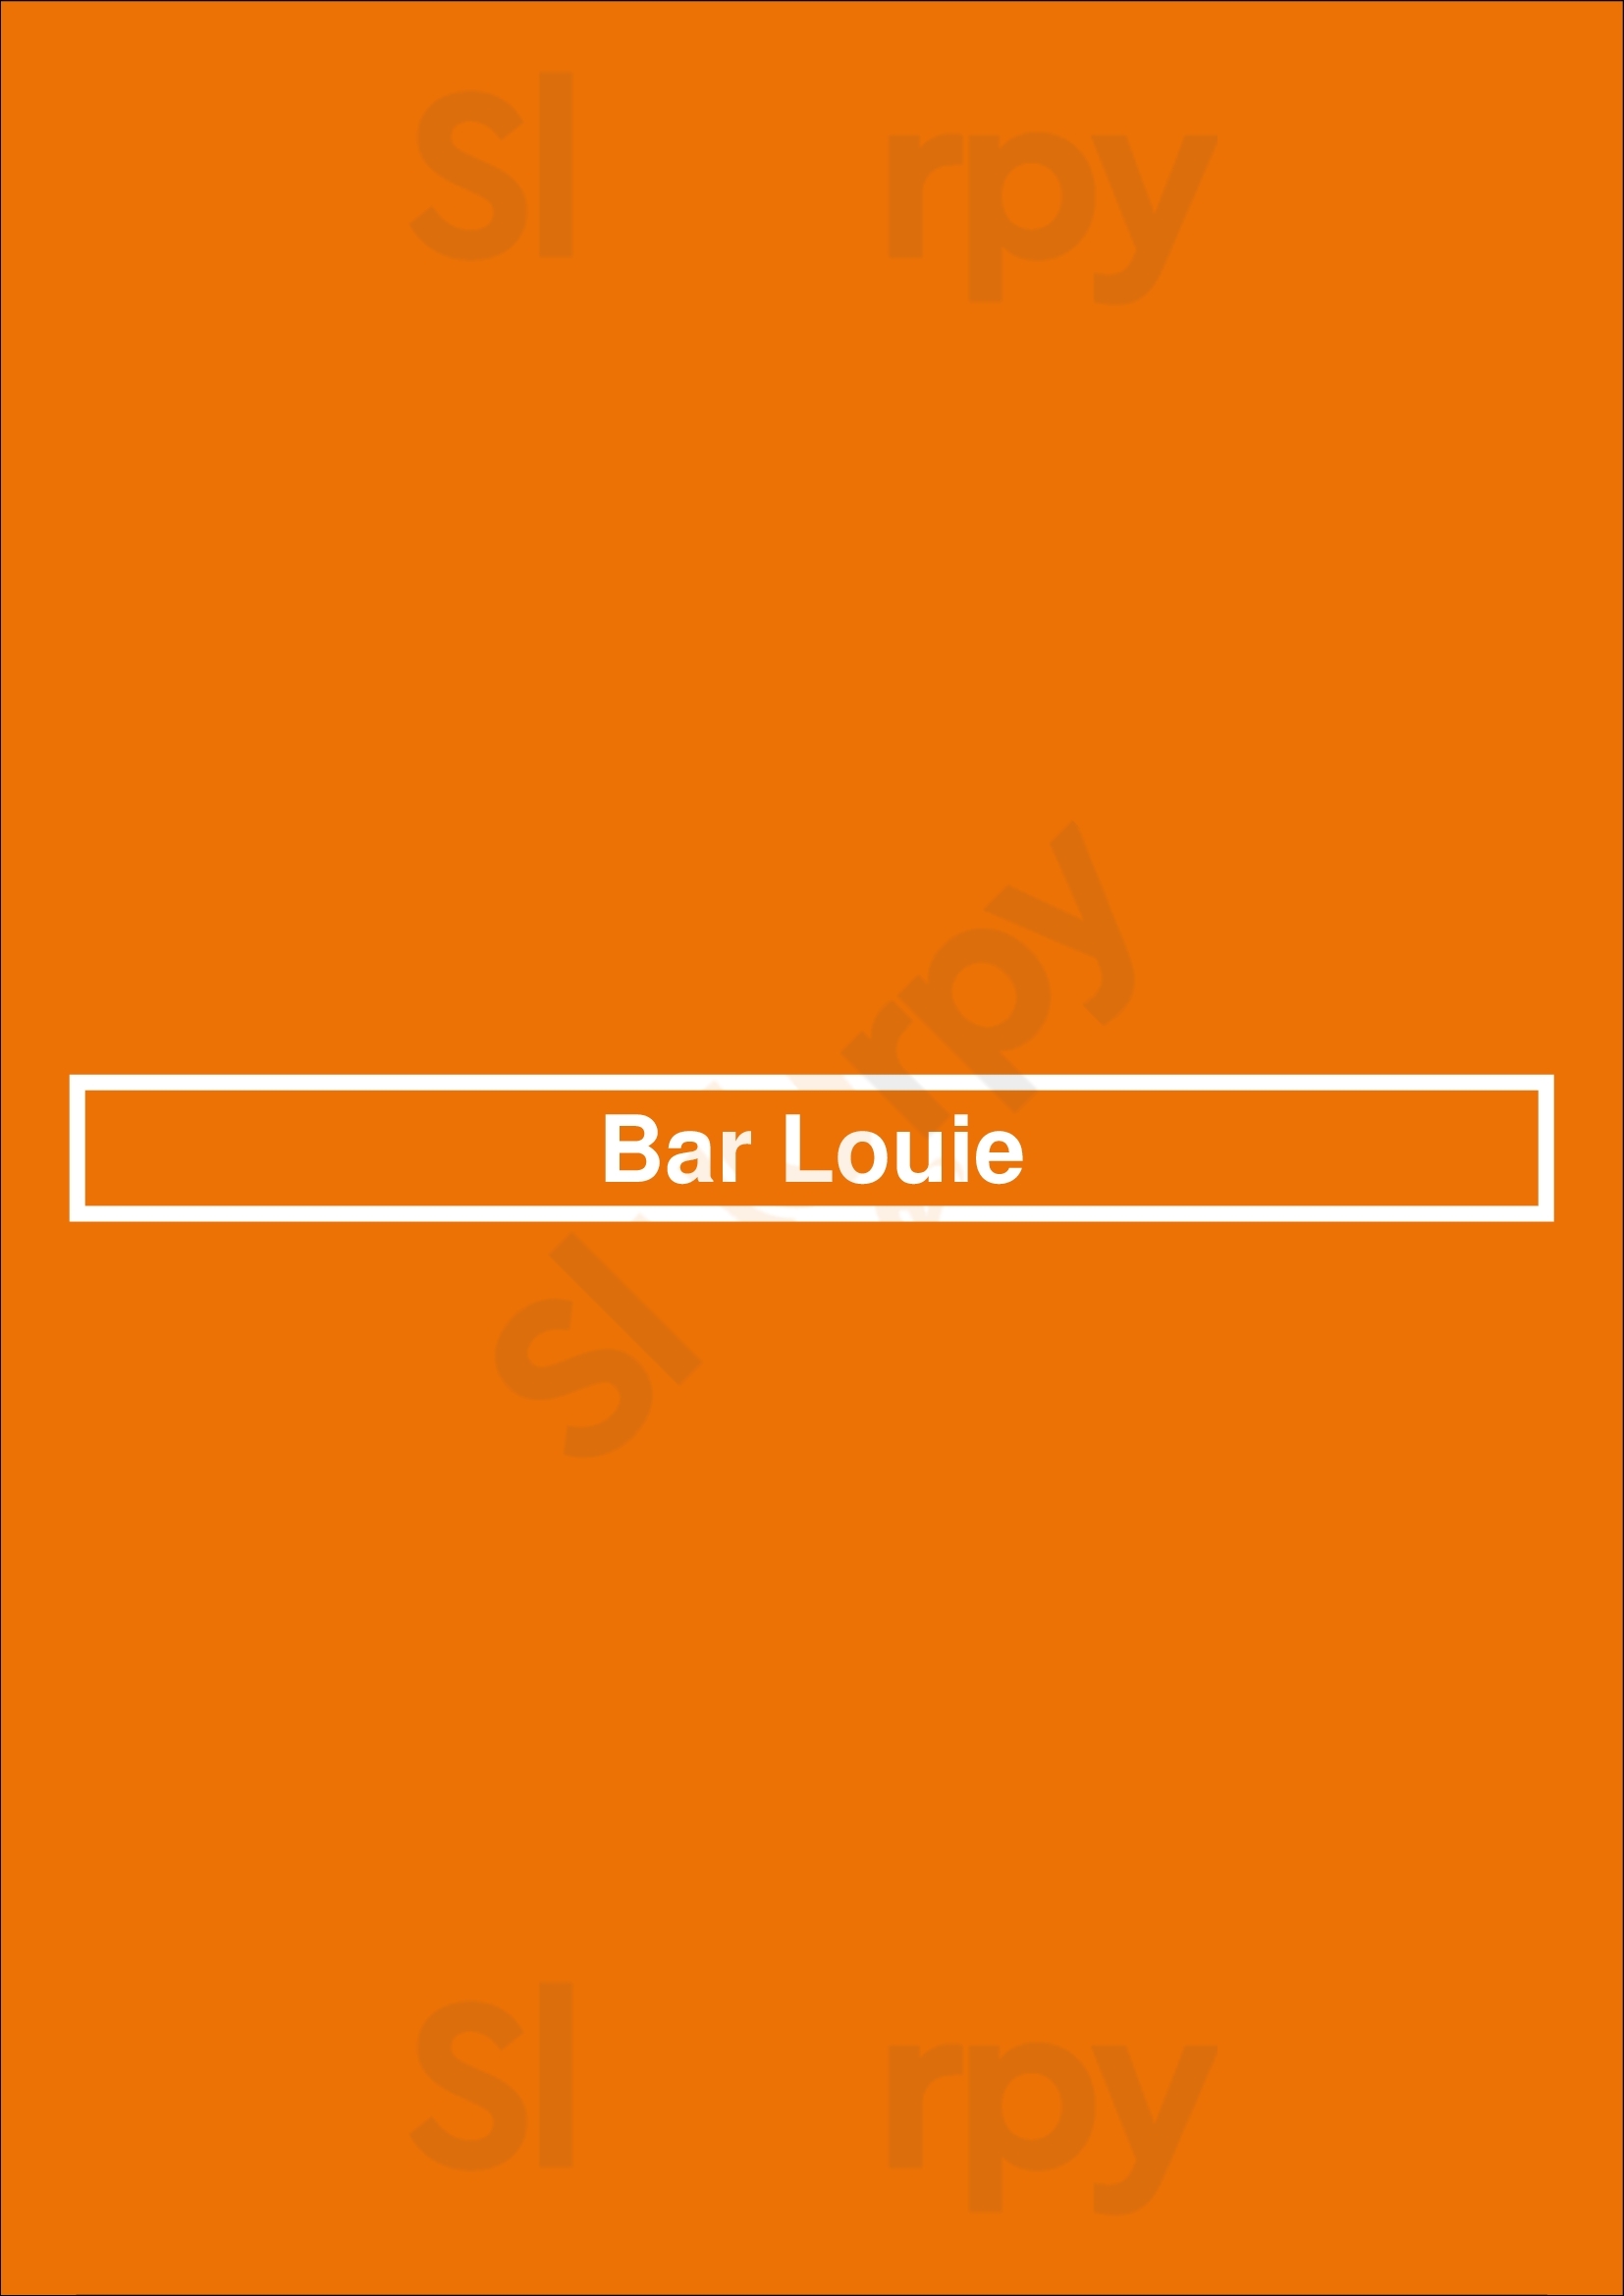 Bar Louie - O'hare Chicago Menu - 1